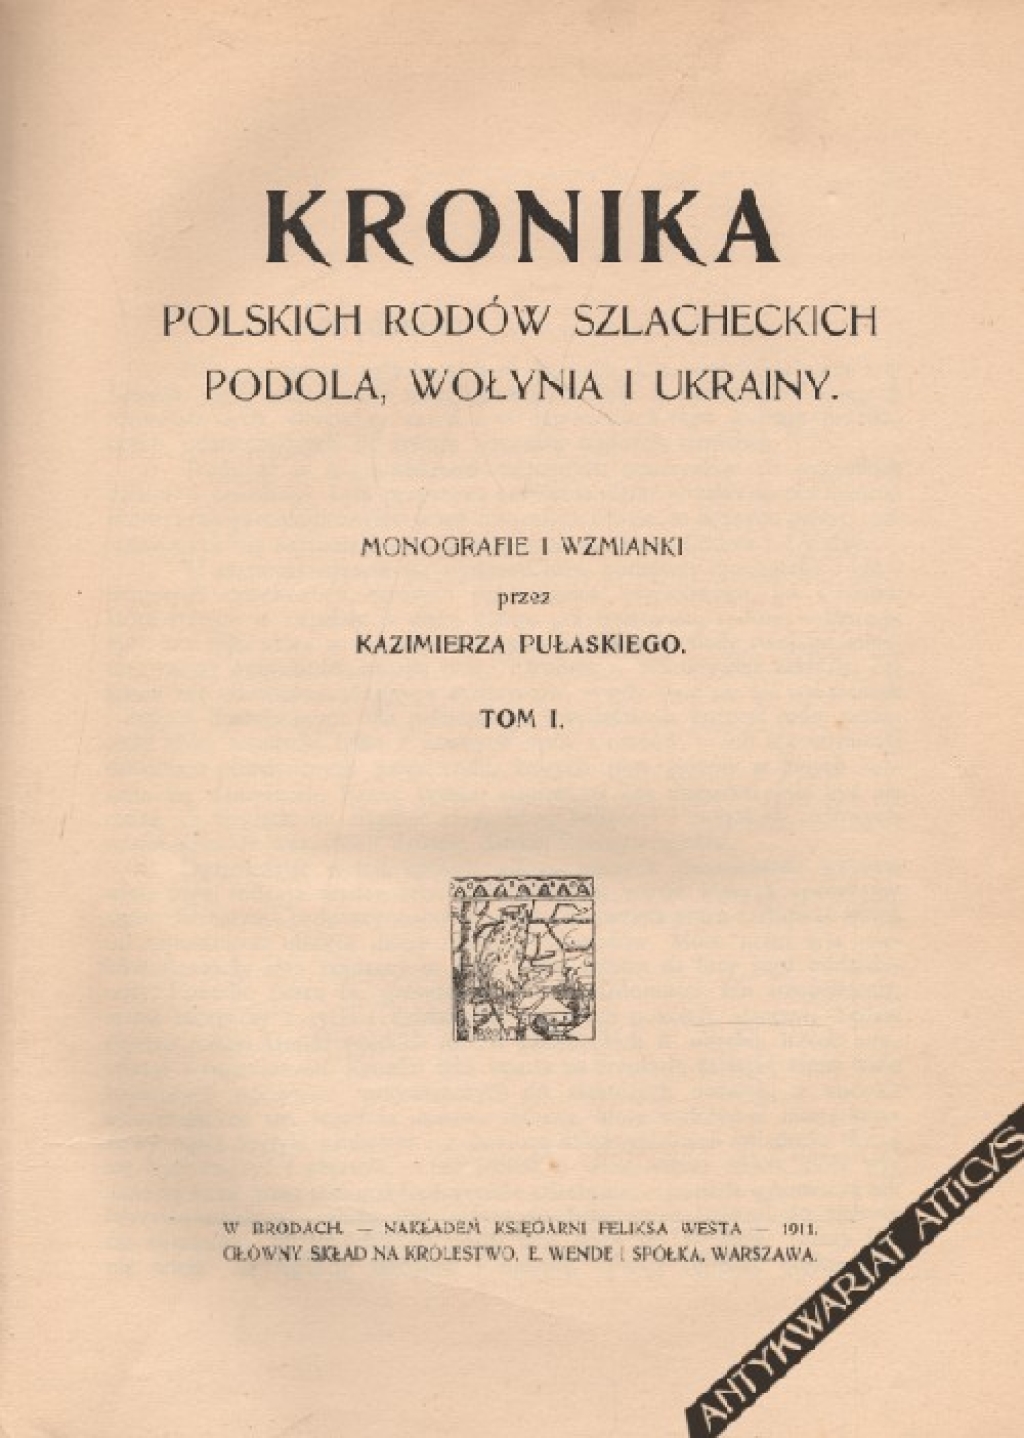 Kronika polskich rodów szlacheckich Podola, Wołynia i Ukrainy. Monografie i wzmianki, t. I